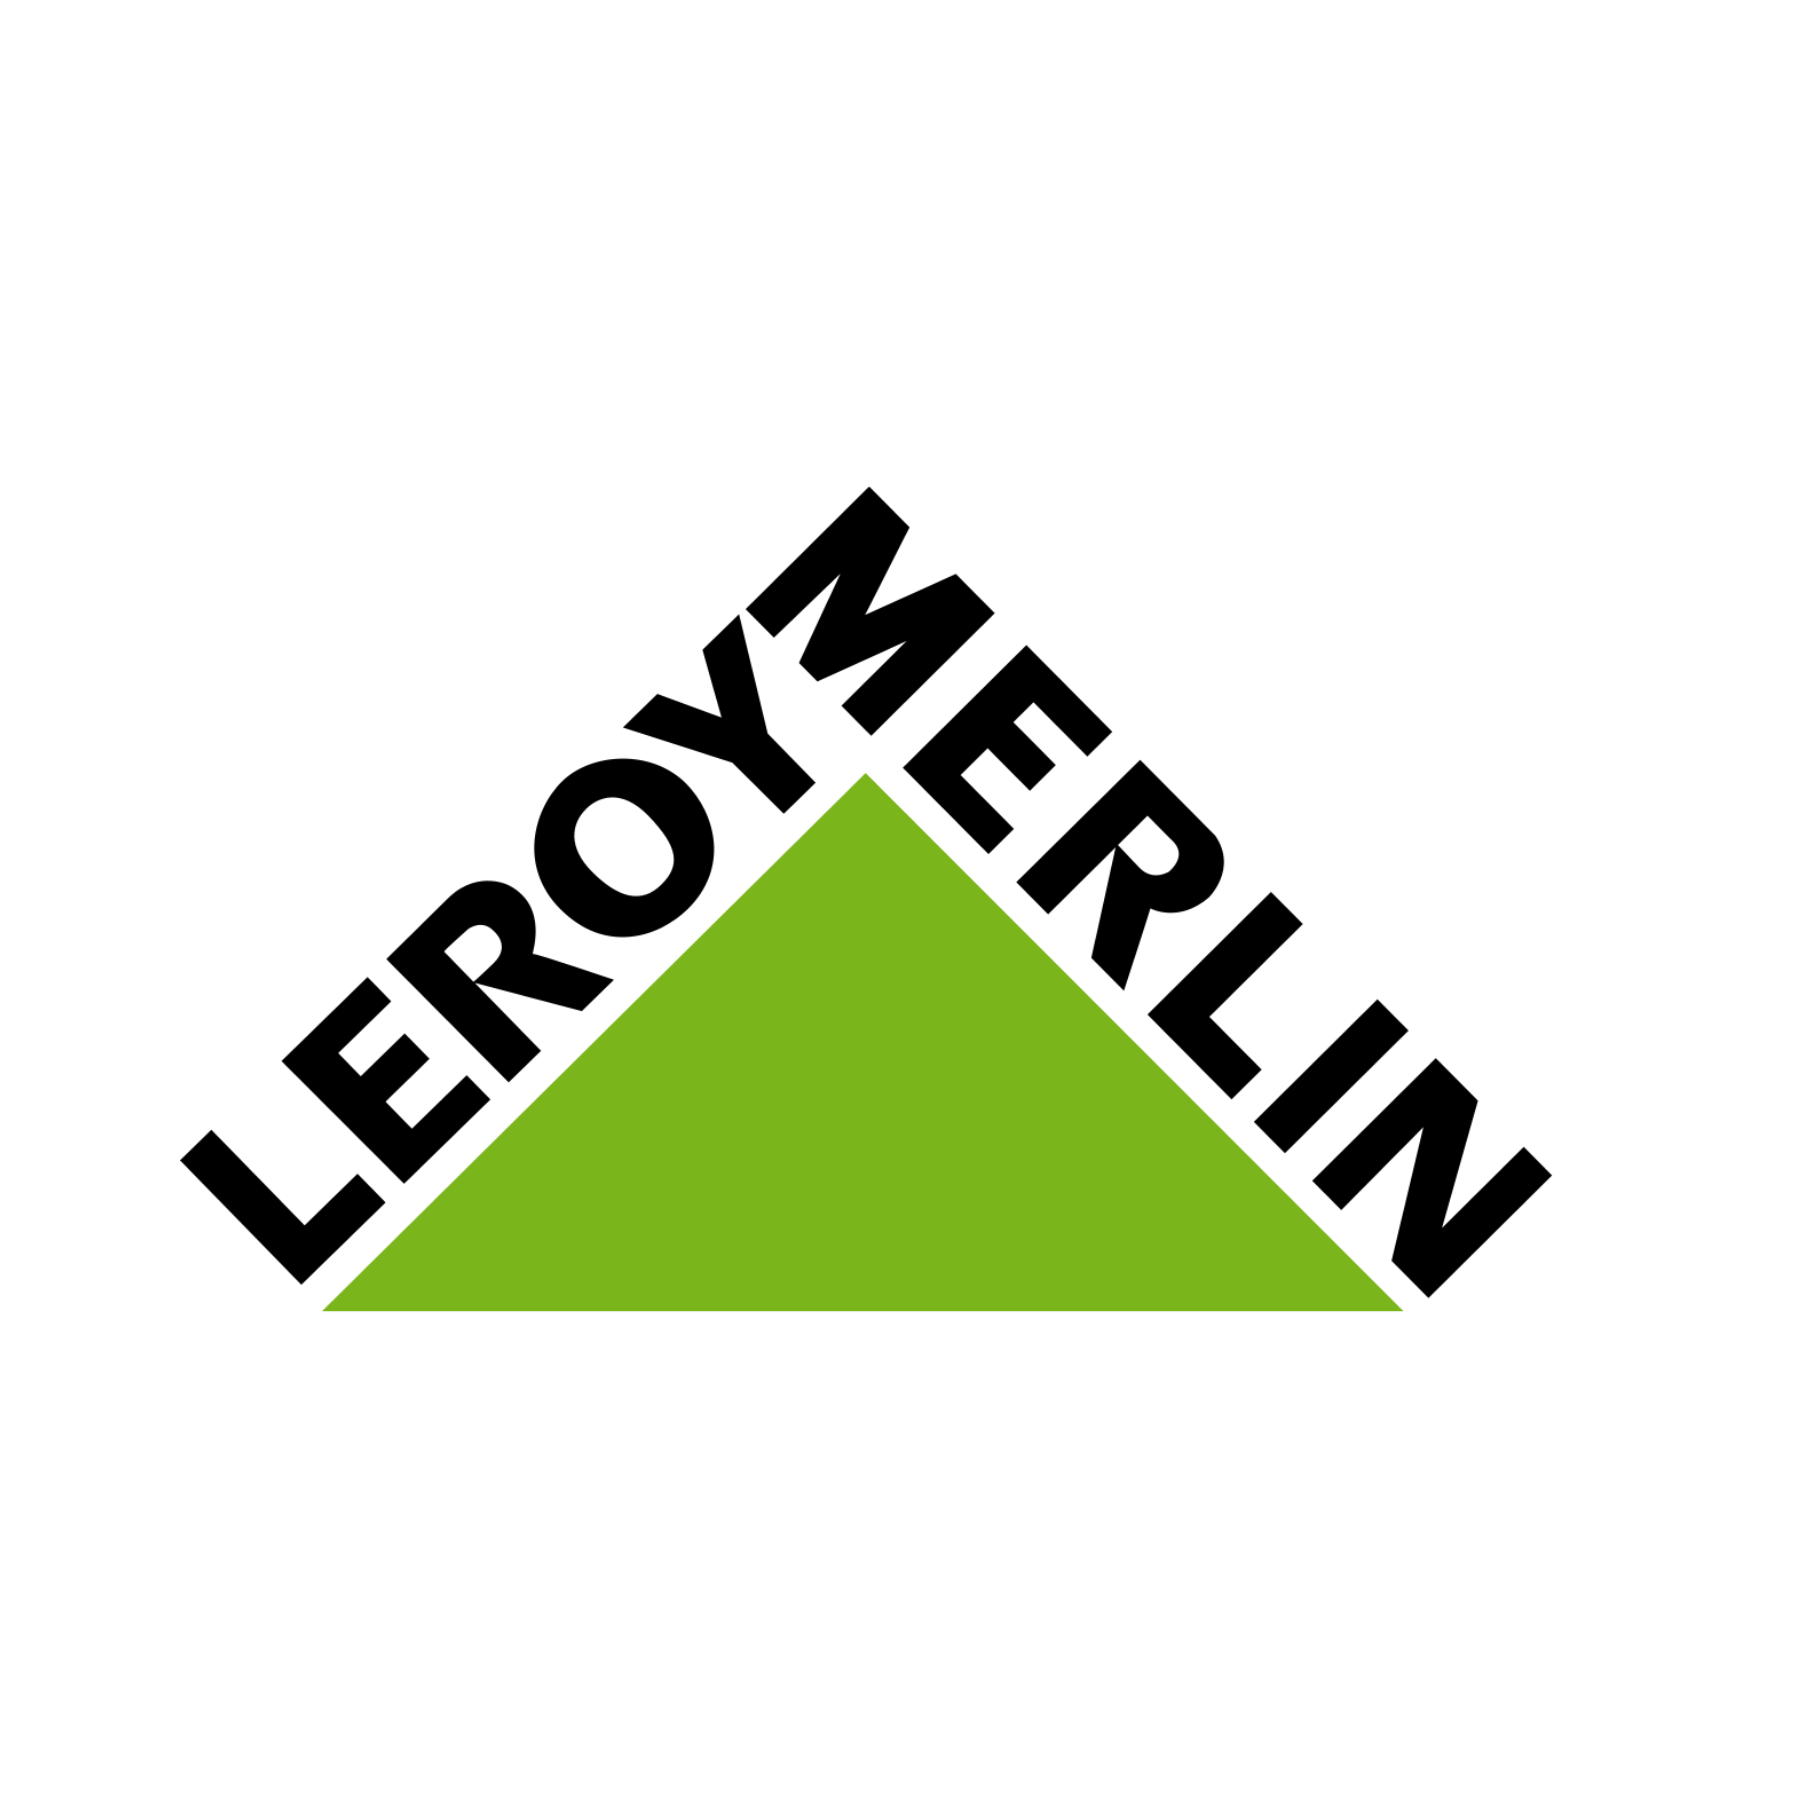 Descuento Leroy Merlin 55%+Envío en Febrero